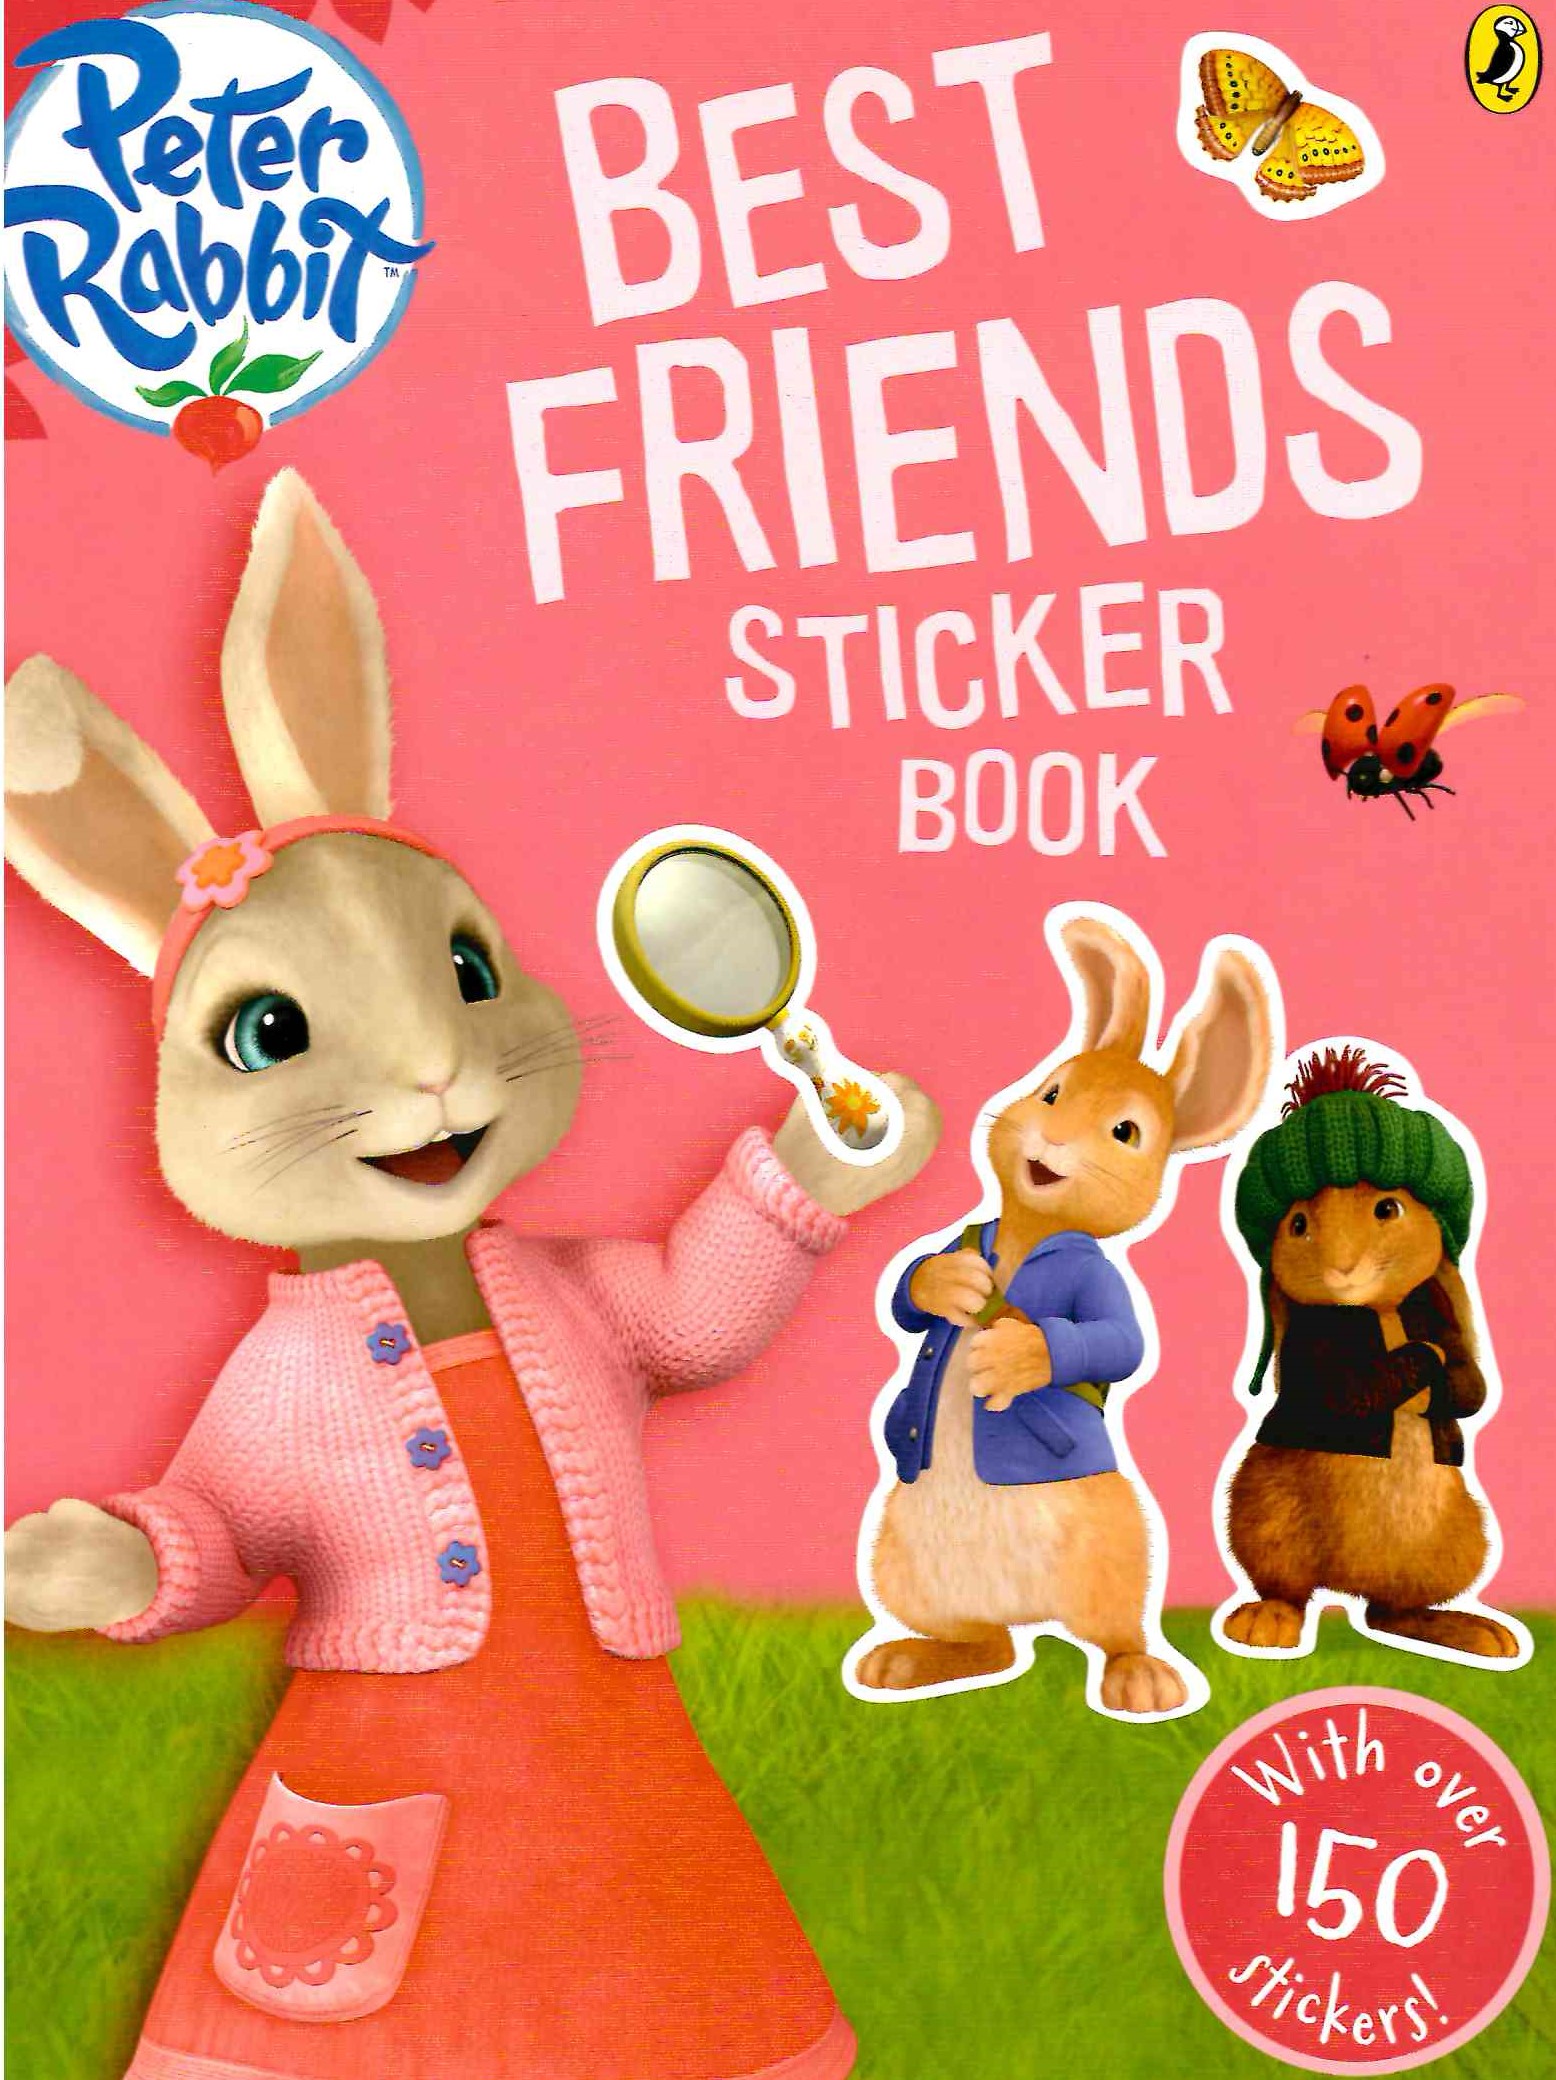 Peter Rabbit: Best Friends Sticker Book